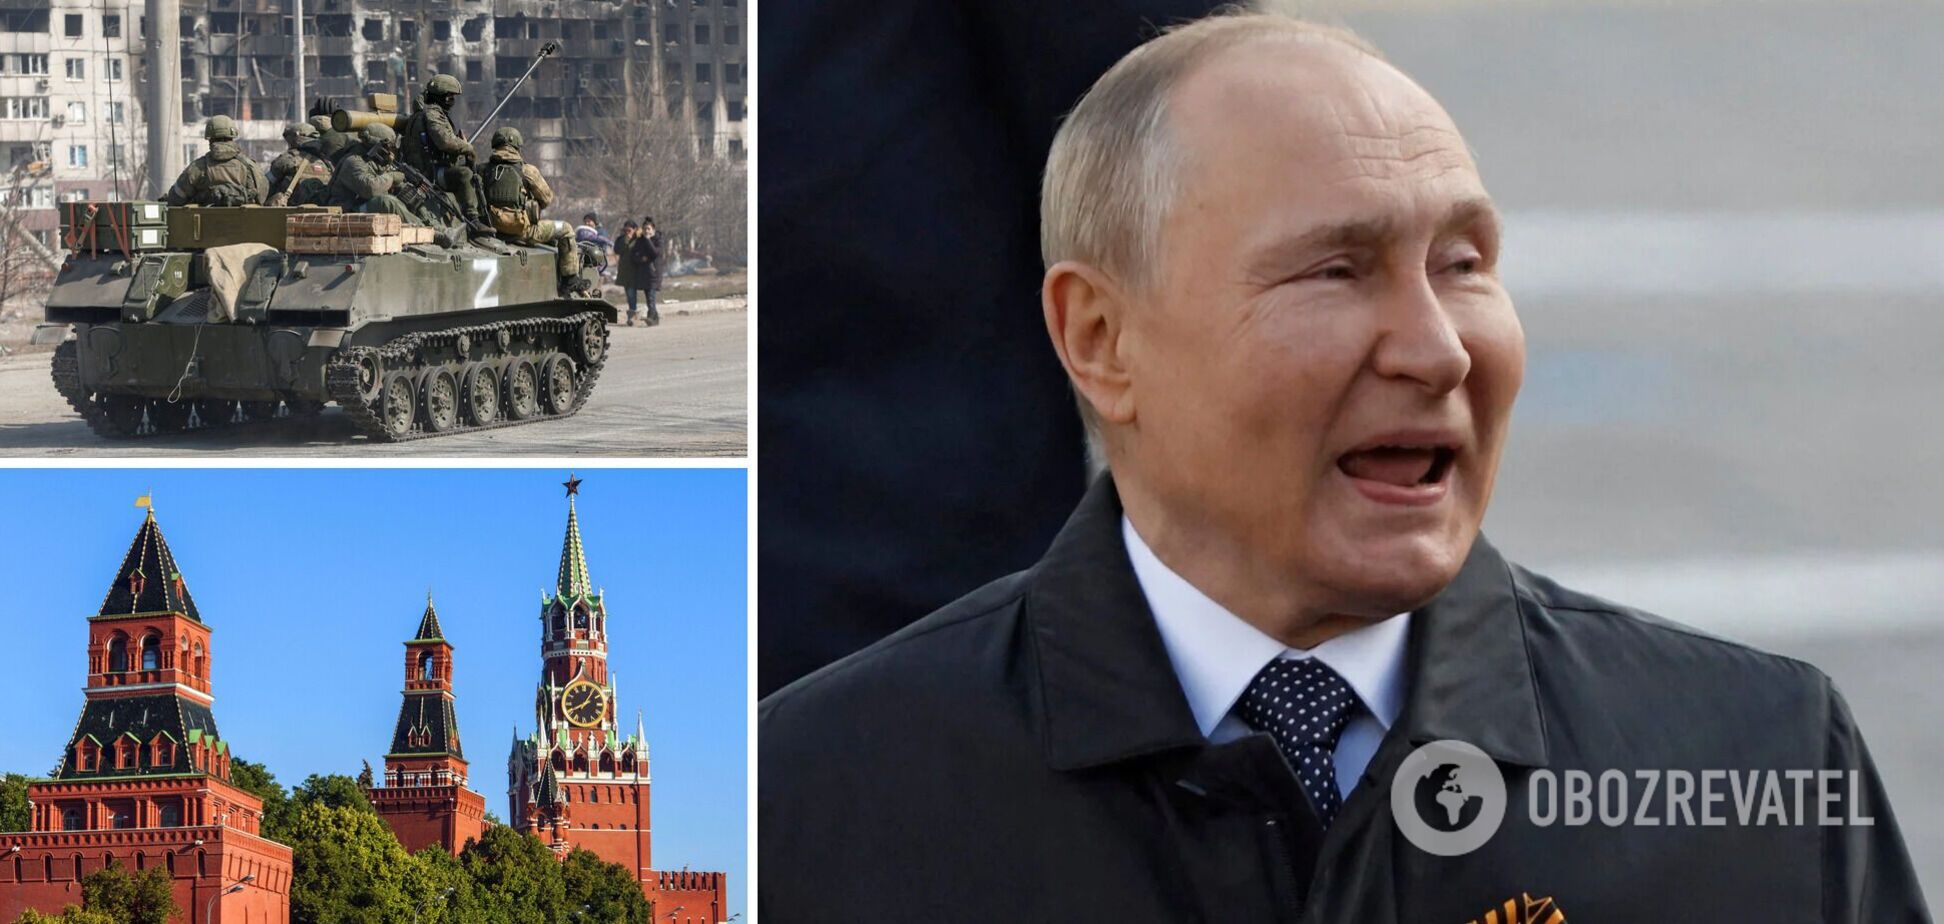 Майстри хаосу. Навіщо Путіну 'боротьба з українським тероризмом'?